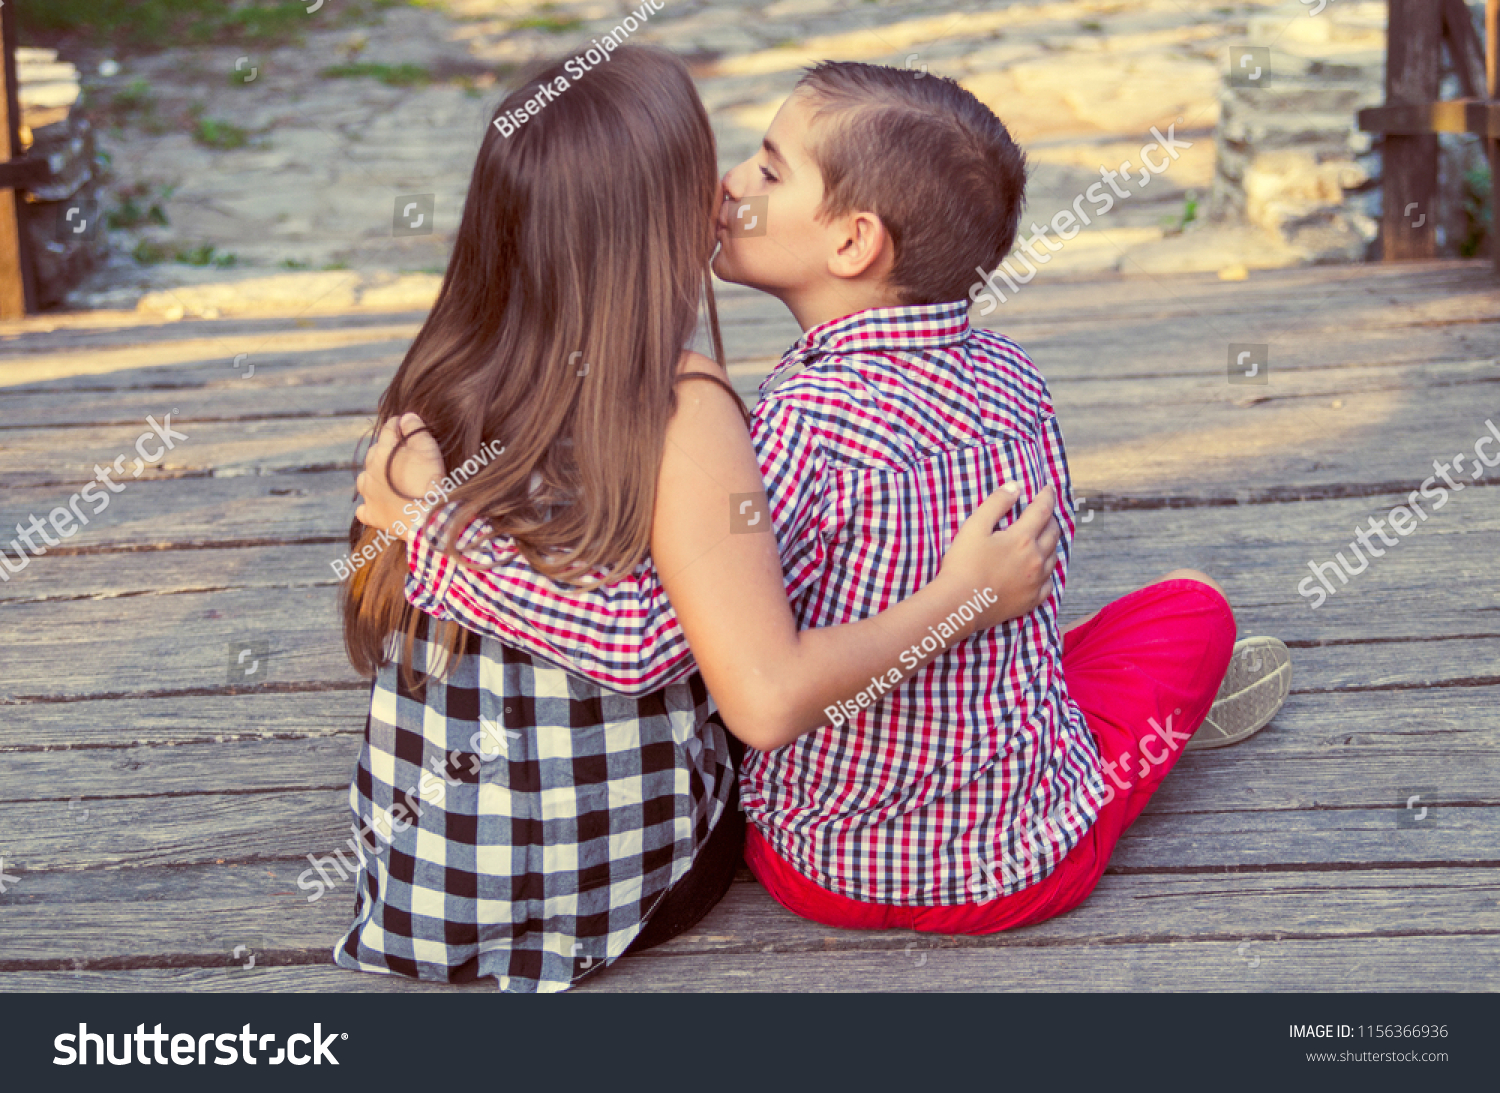 она целует маленького мальчика порно фото 118